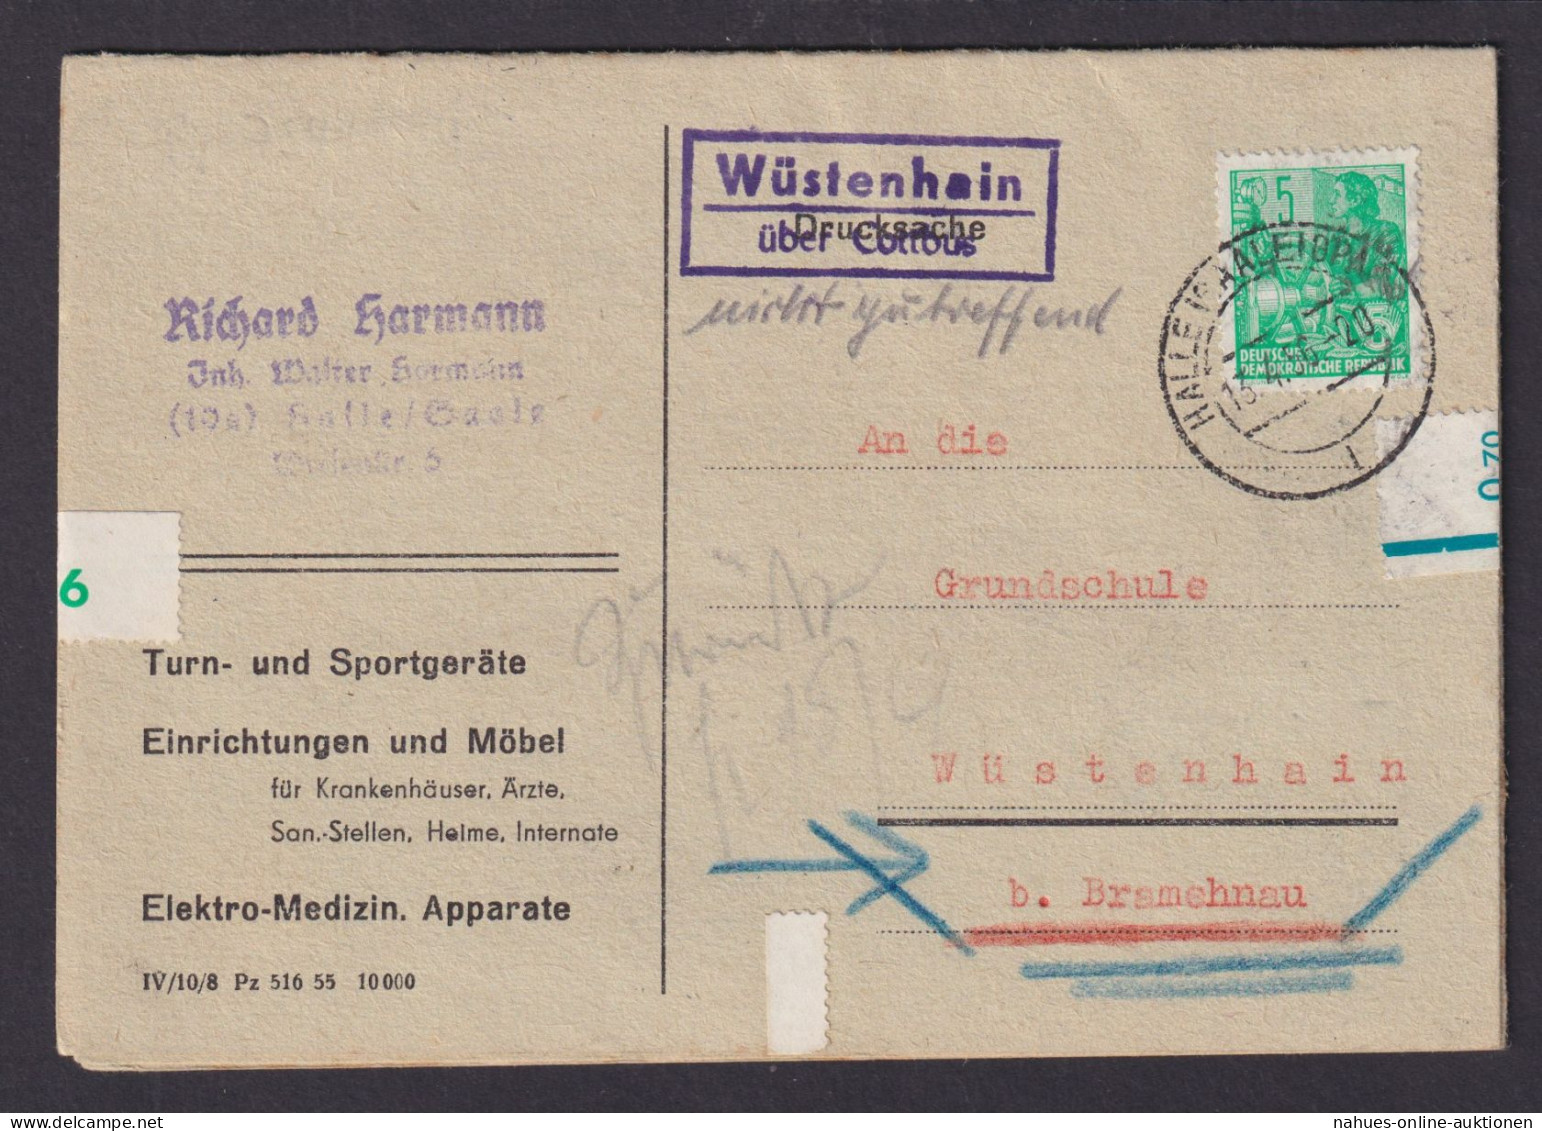 Wüstenhain über Cottbus Brandenburg DDR Bestellkarte Landpoststempel N. Bramenau - Covers & Documents